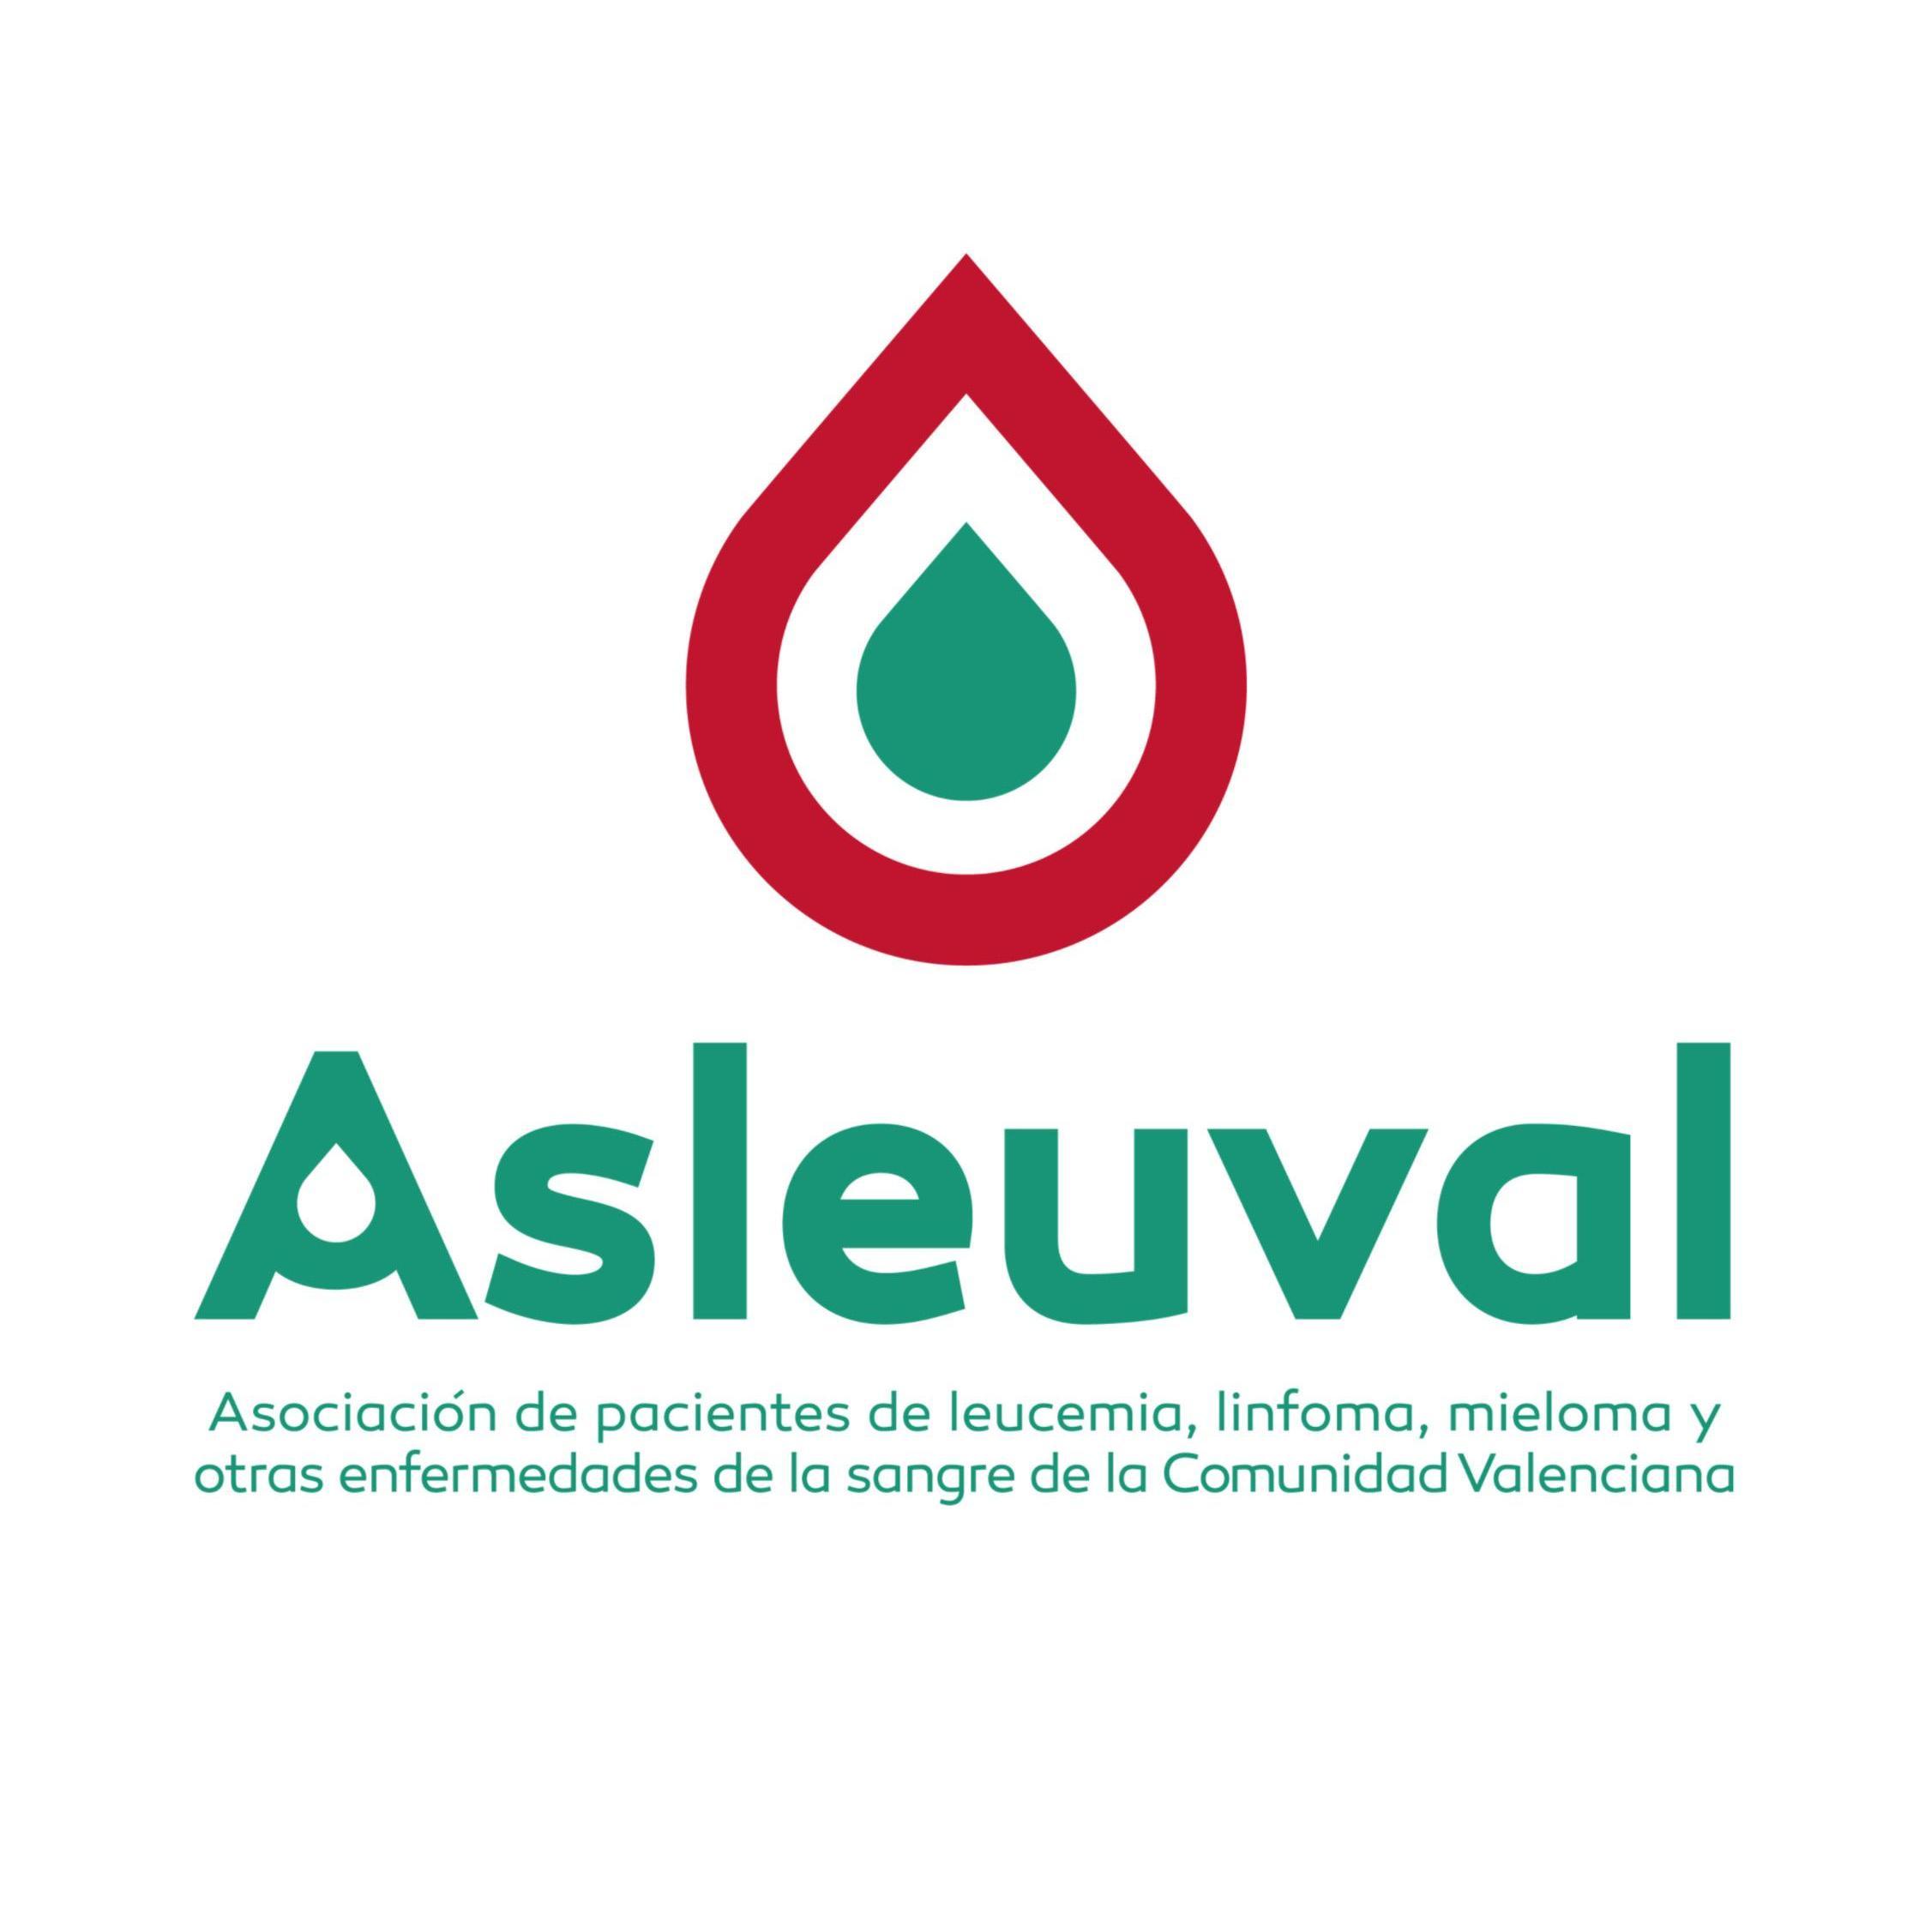 ASLEUVAL - Asociación de pacientes de leucemia, linfoma, mieloma y otras enfermedades de la sangre de la Comunidad Valenciana